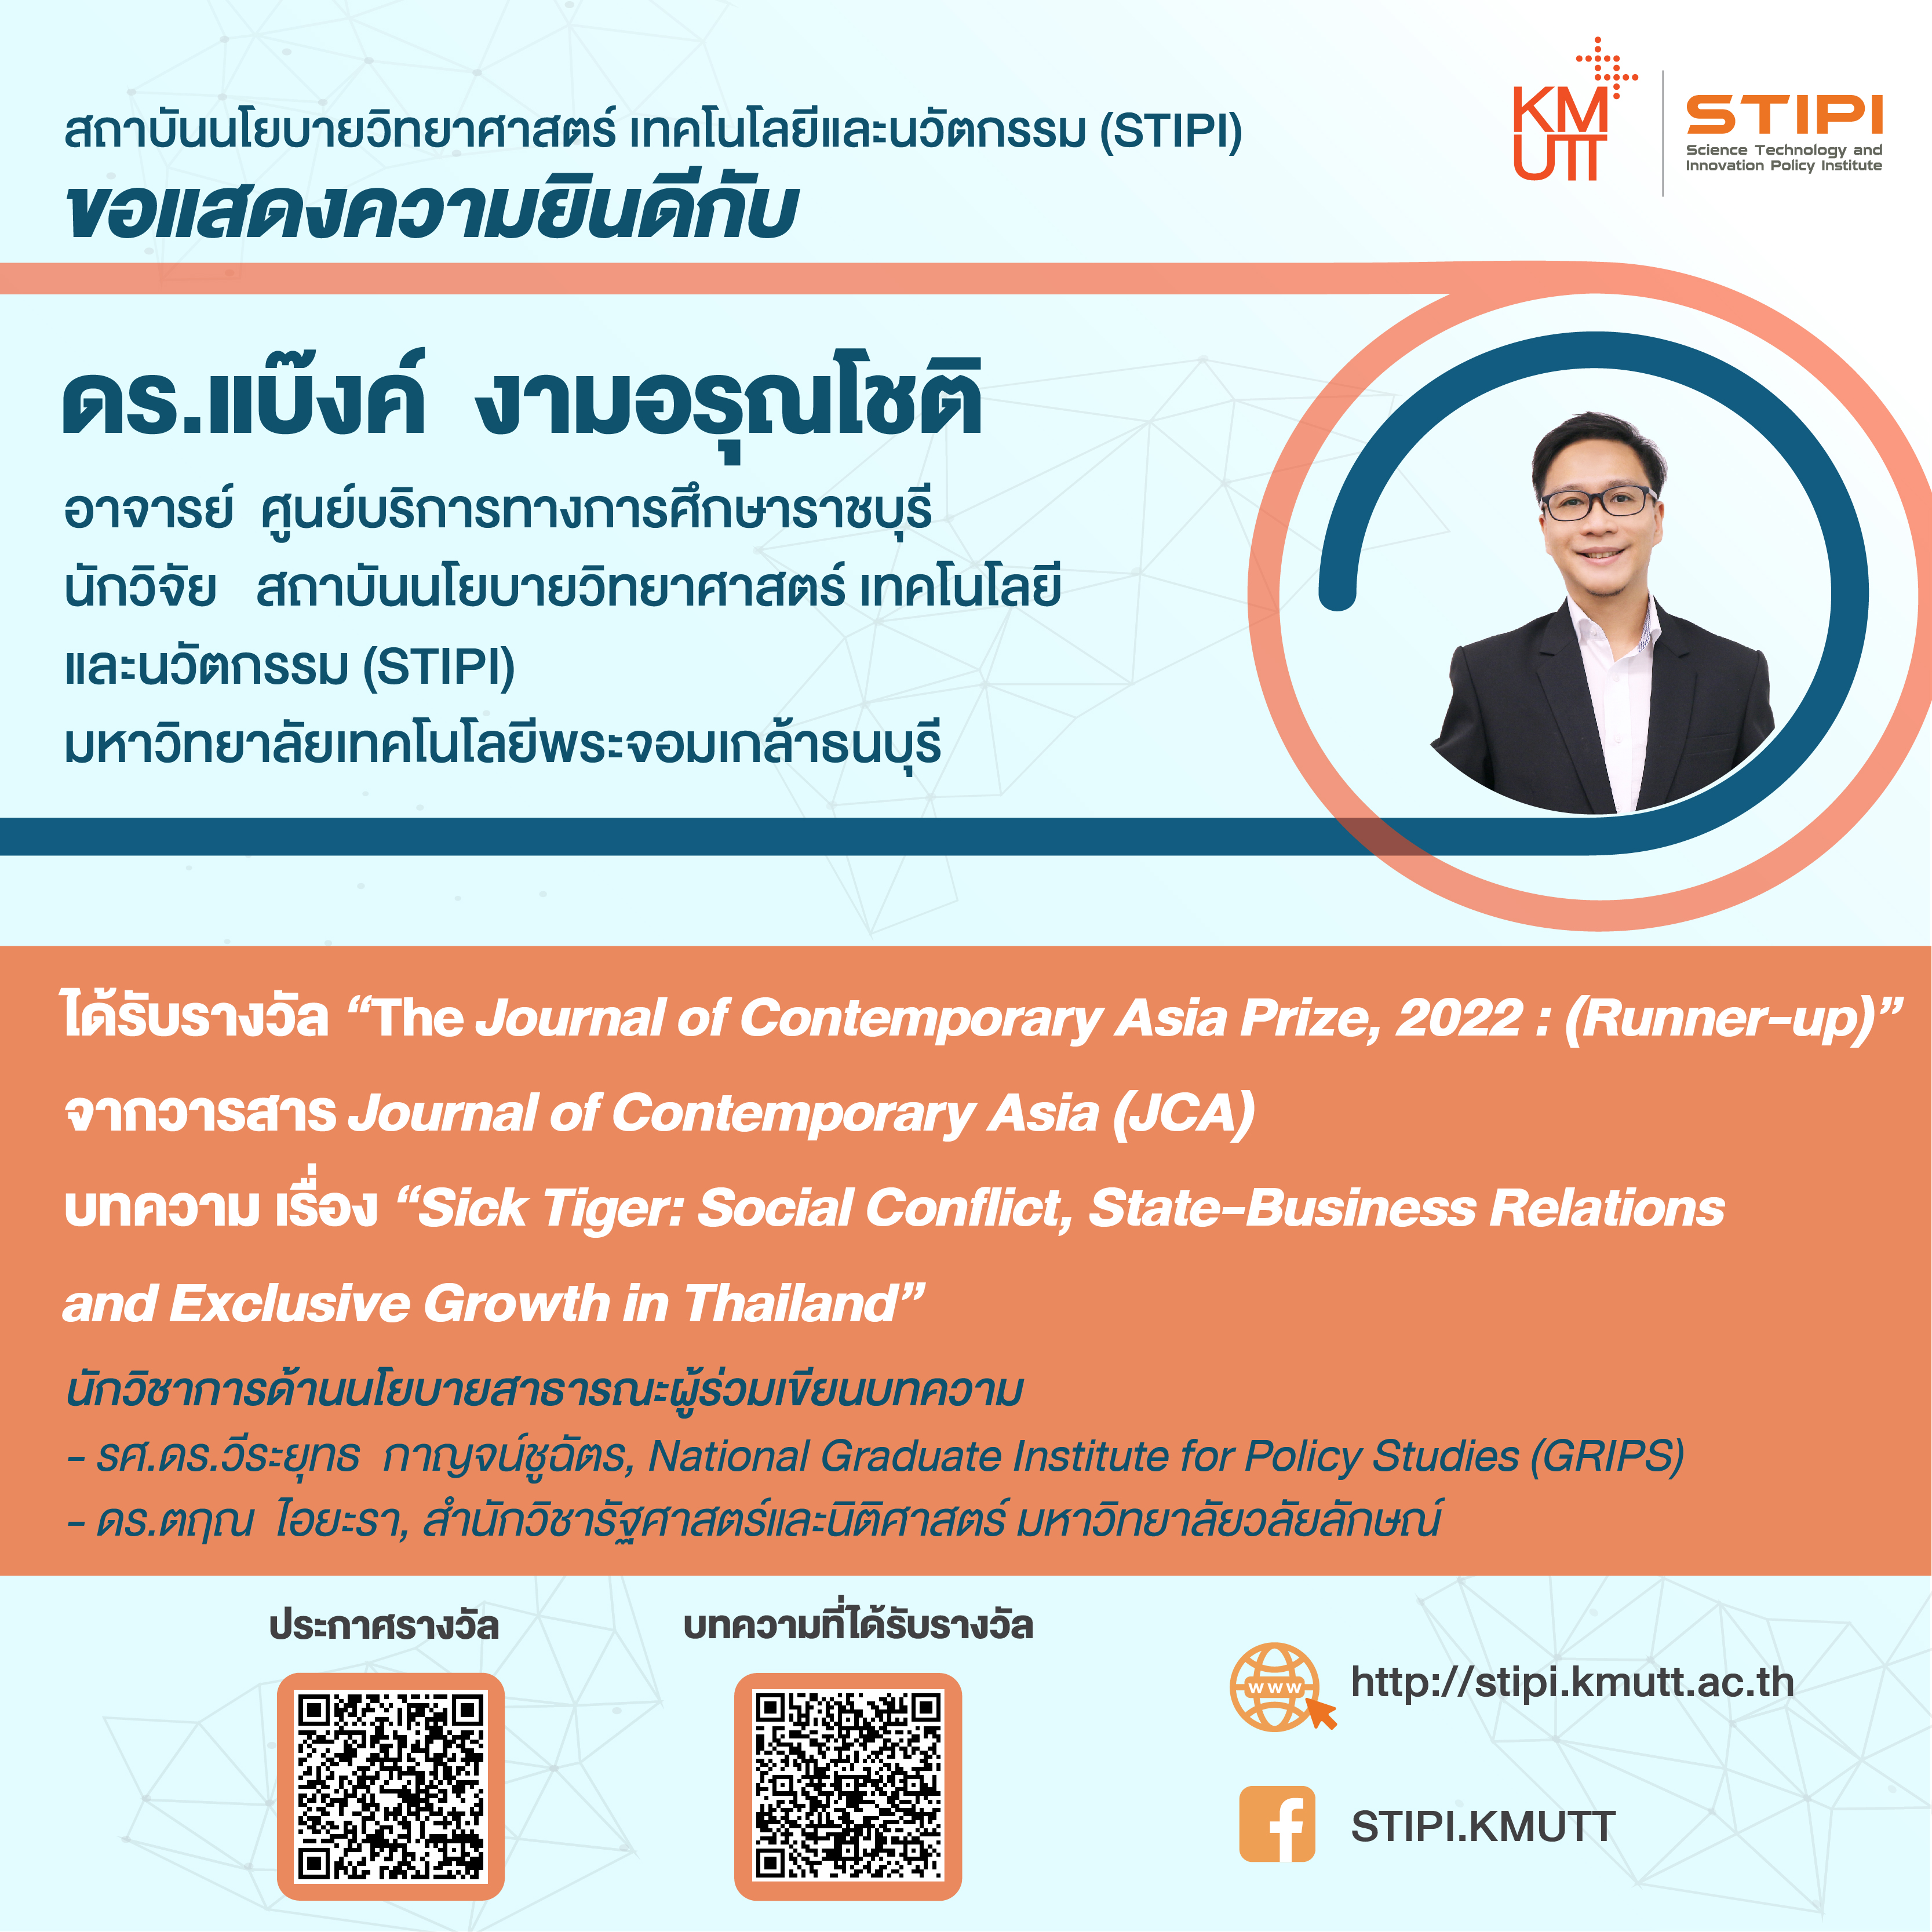 นักวิจัย STIPI ได้รับรางวัล “The Journal of Contemporary Asia Prize, 2022 : (Runner-up)” 